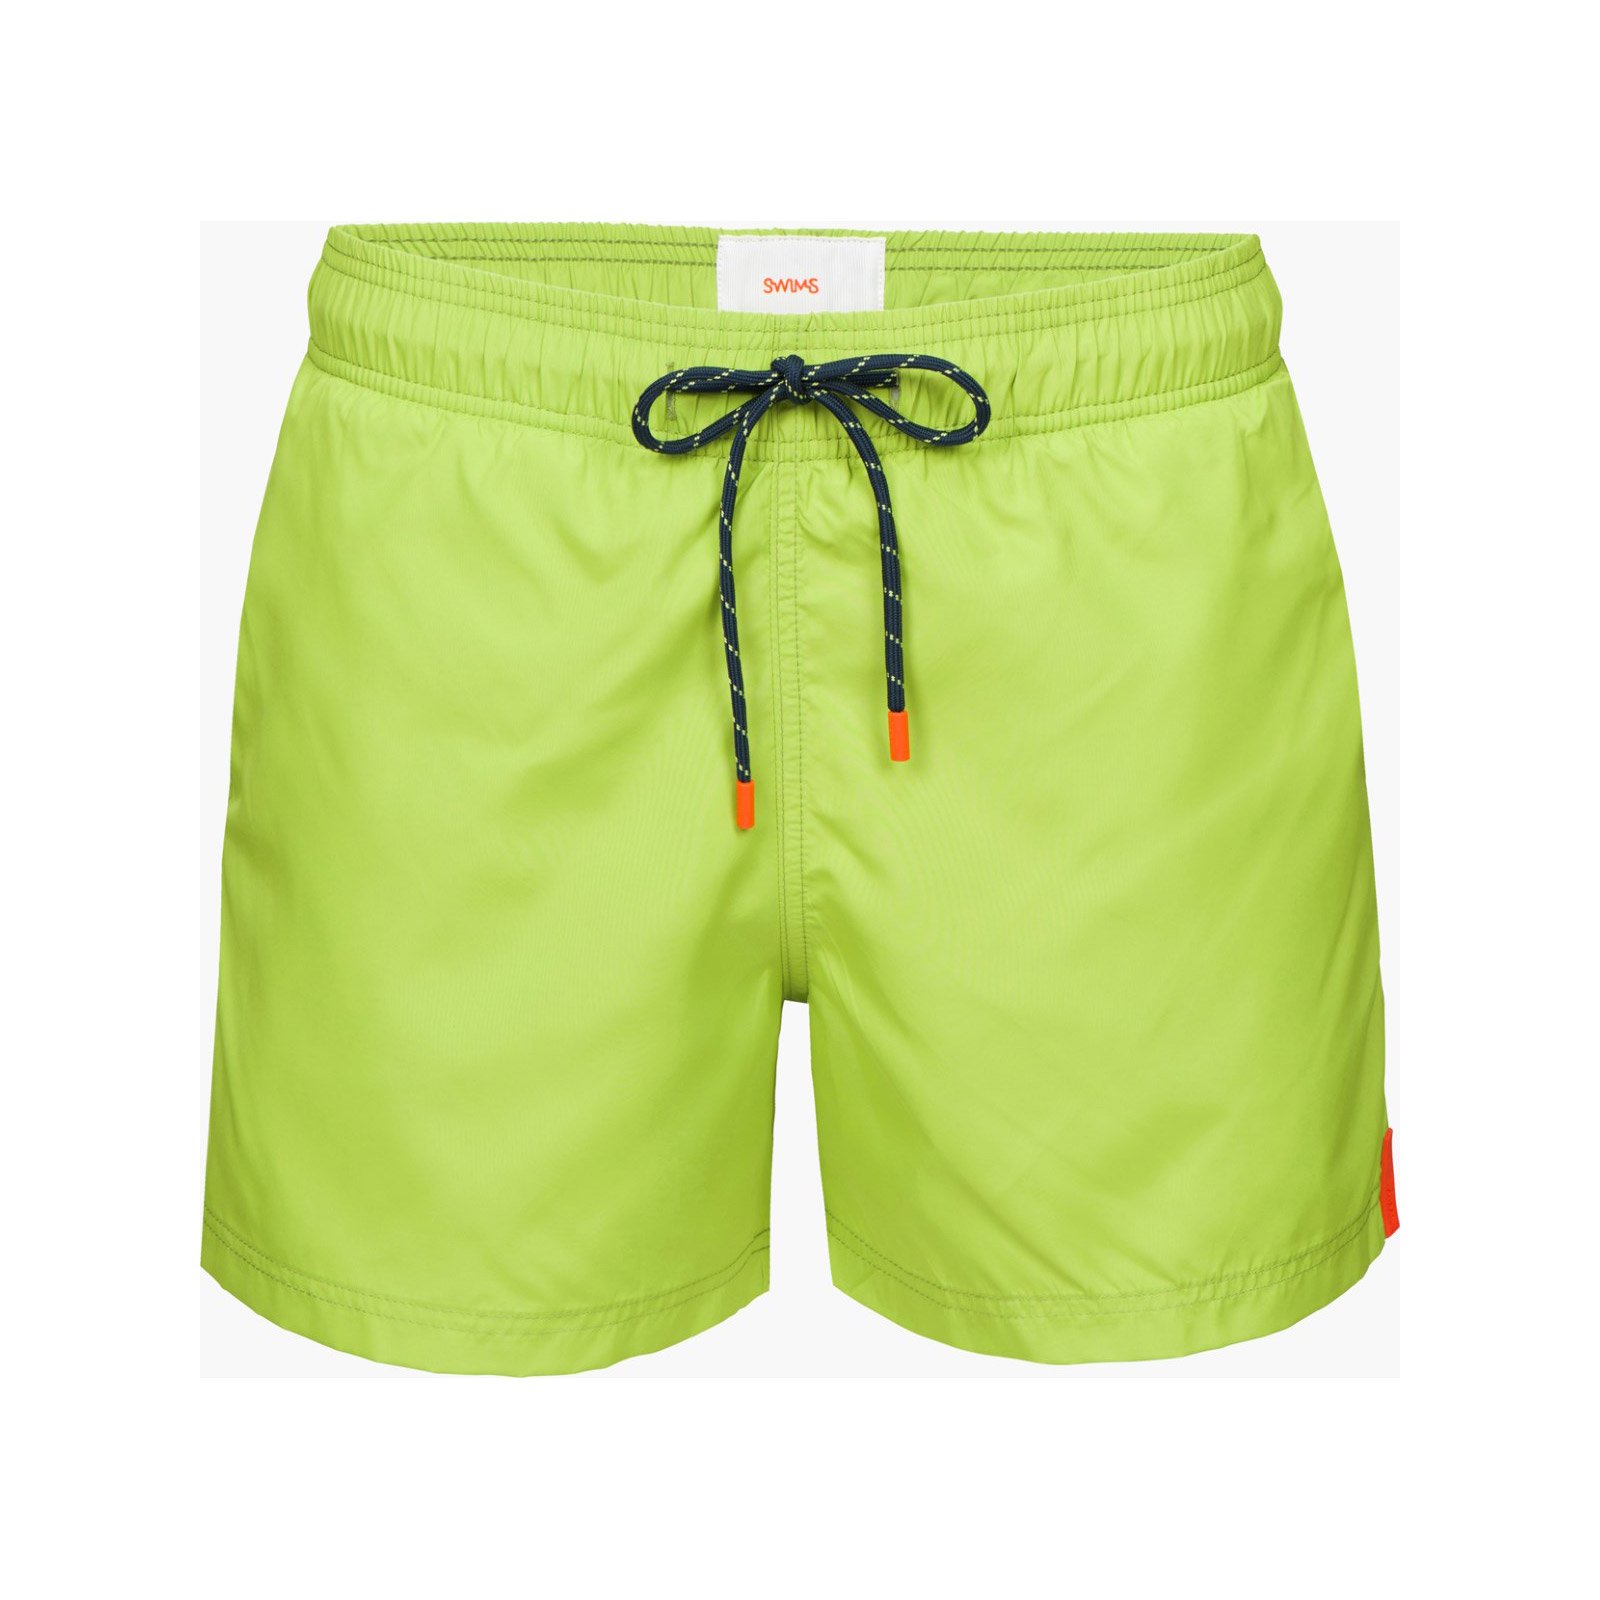 Montego Bay Ultra Light Swim Shorts - On Sale : Fifth Avenue Menswear ...